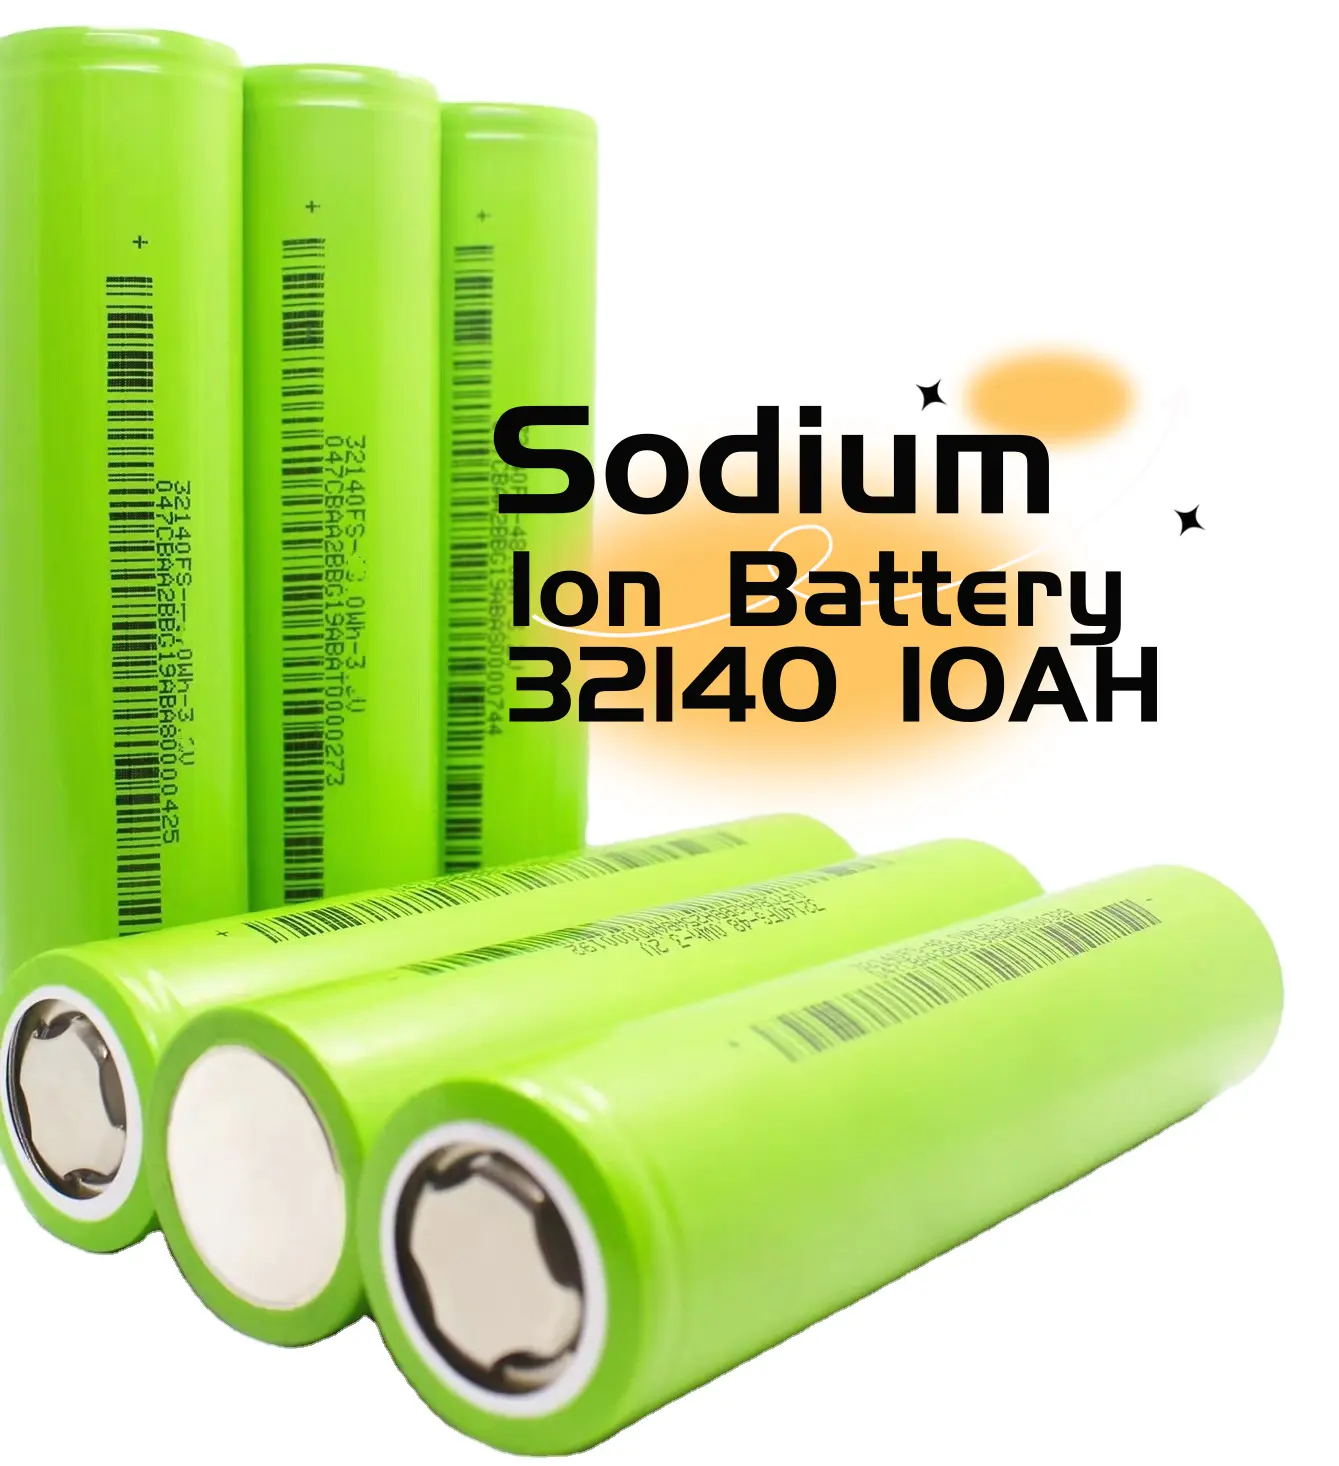 Sib 32140 batteria agli ioni di sodio 3V celle 33140 10ah produttore produttori di ioni di sodio 112wh/kg scooter HiNa batteria al sodio